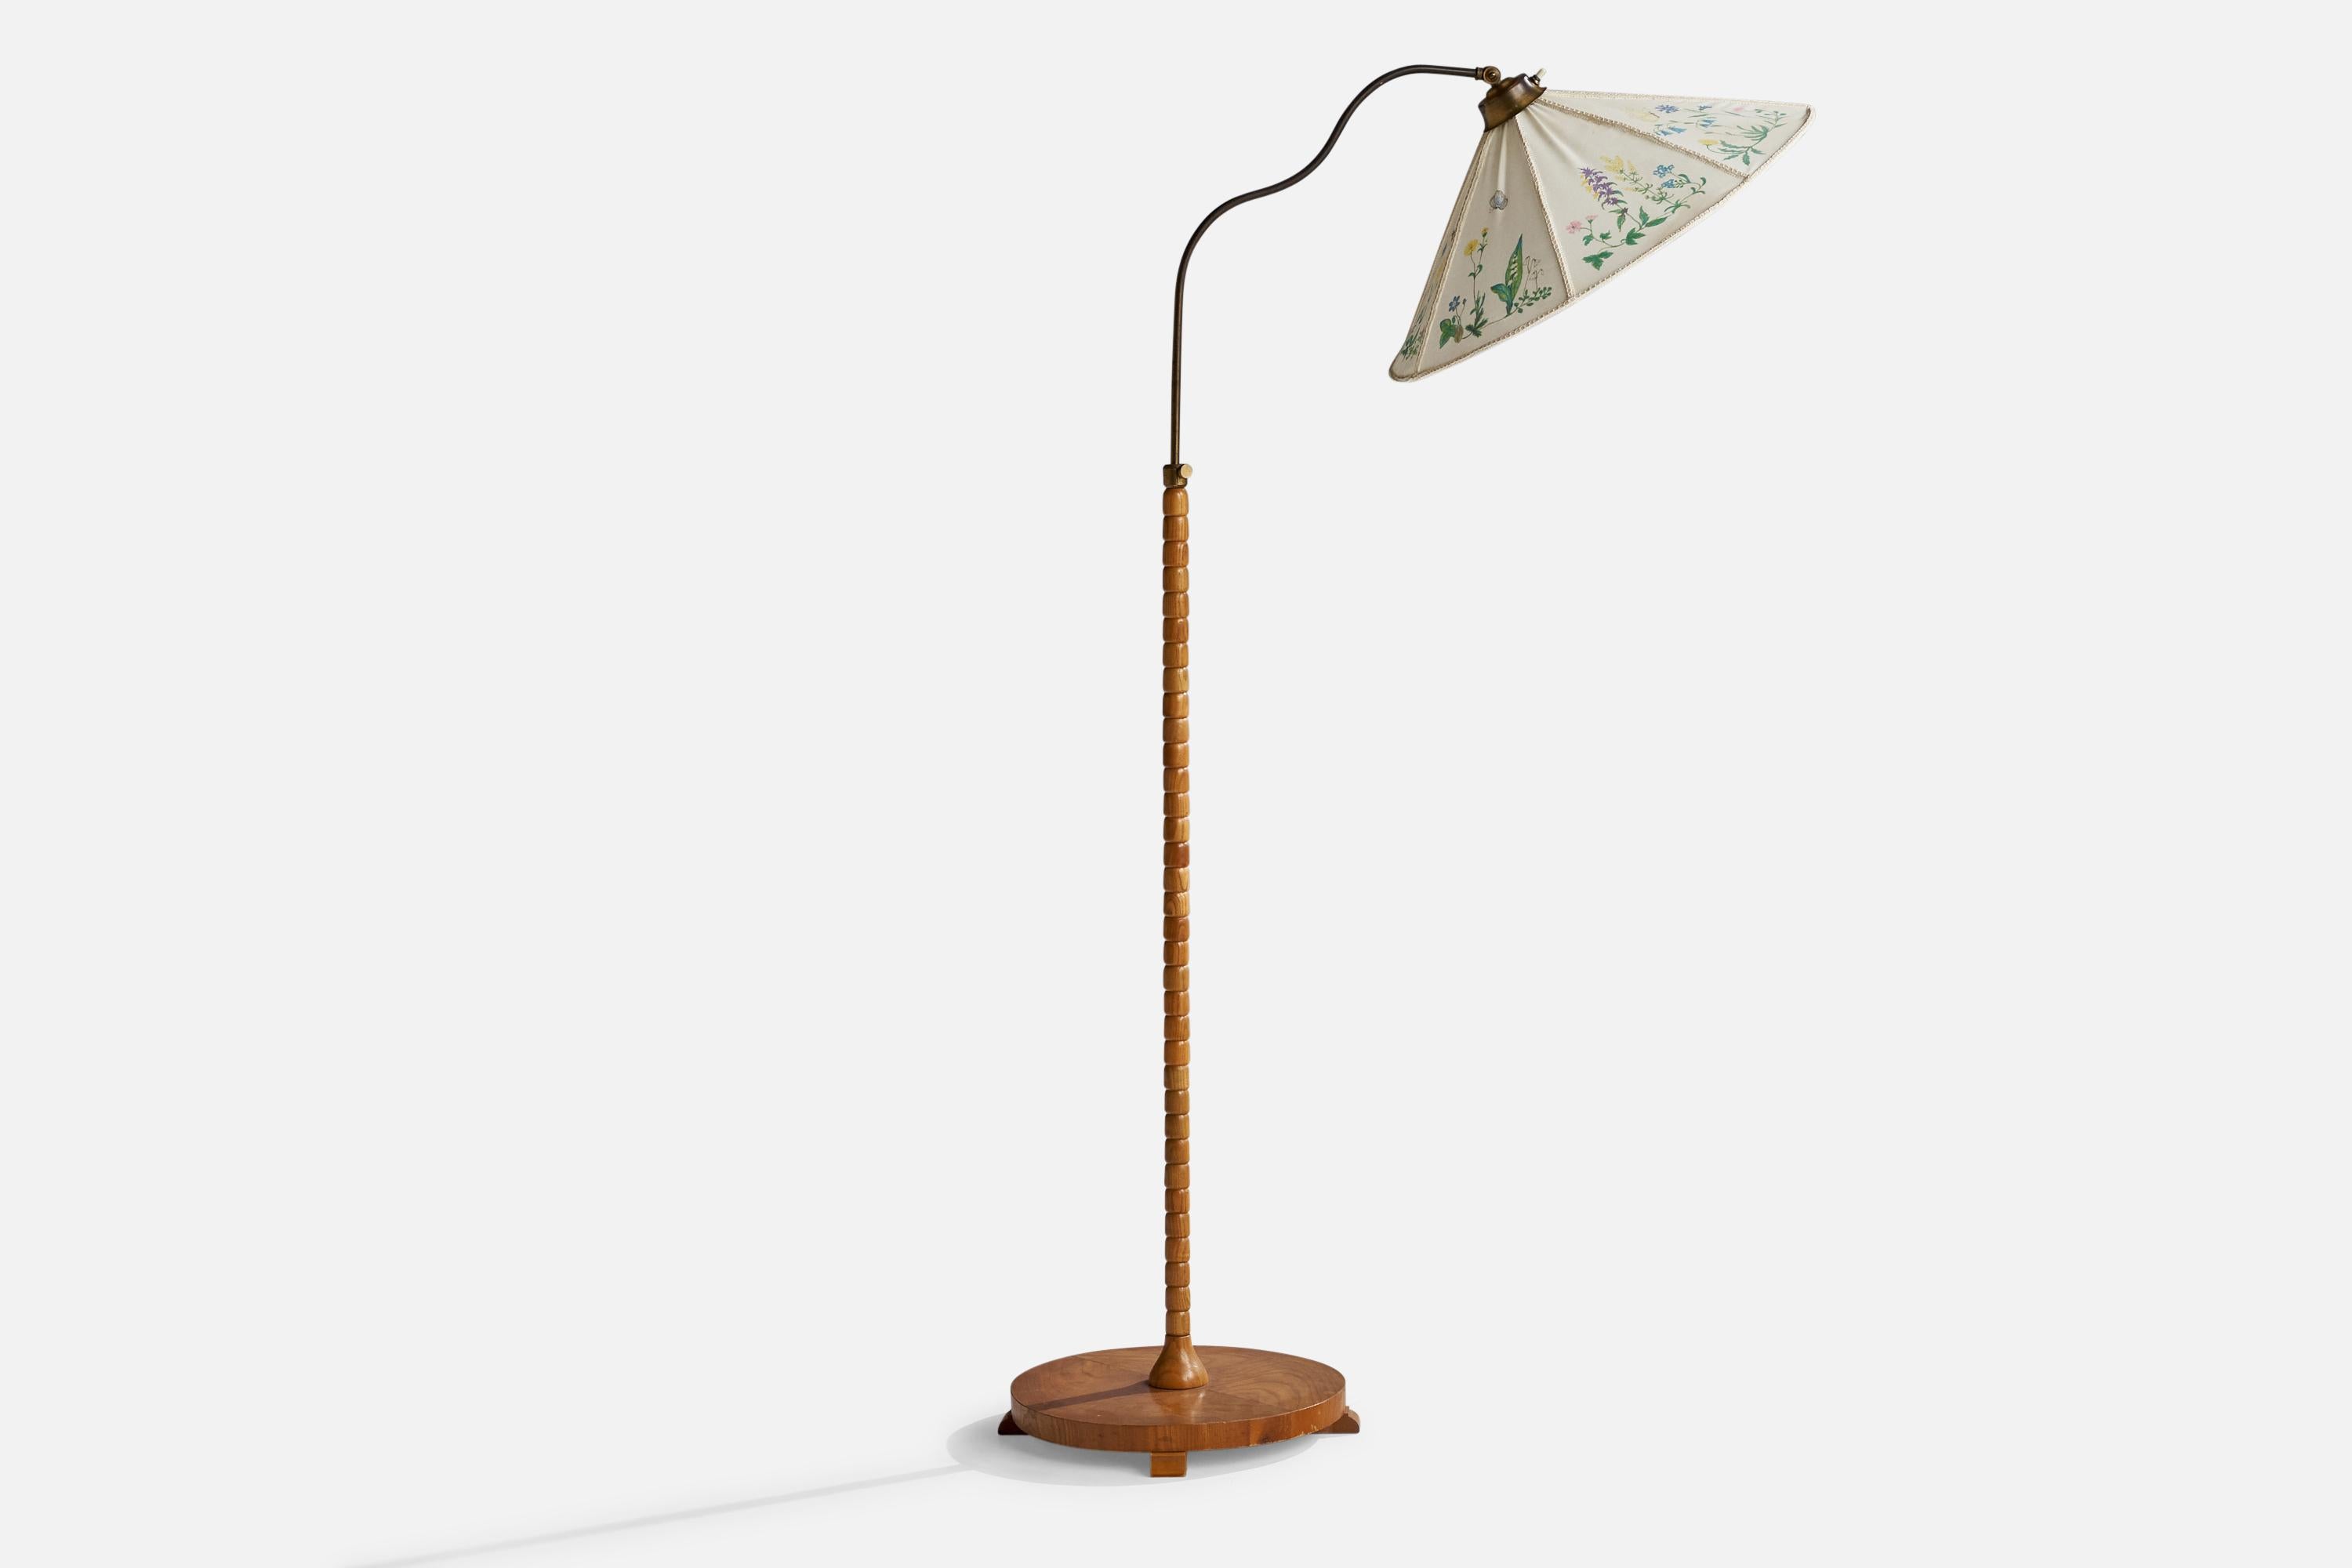 Stehlampe aus Messing, Ulme und floral bedrucktem Stoff, entworfen und hergestellt in Schweden, 1940er Jahre.

Abmessungen variabel.

Gesamtabmessungen (Zoll): 57